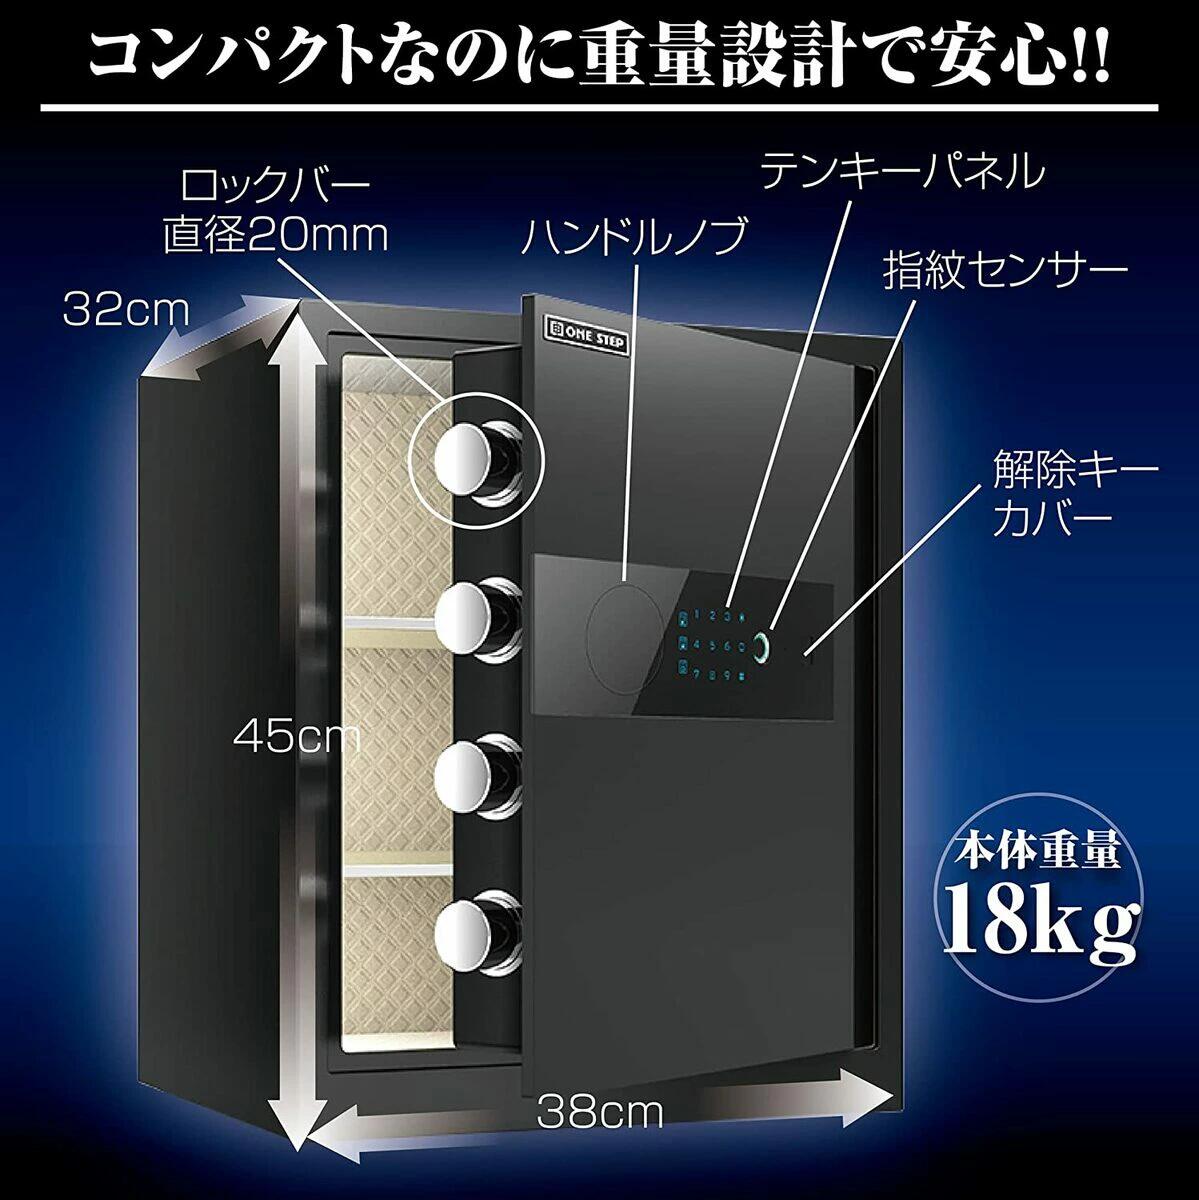 電子金庫 タッチパネル 指紋認証 アラーム機能付き 壁付け対応(40cm